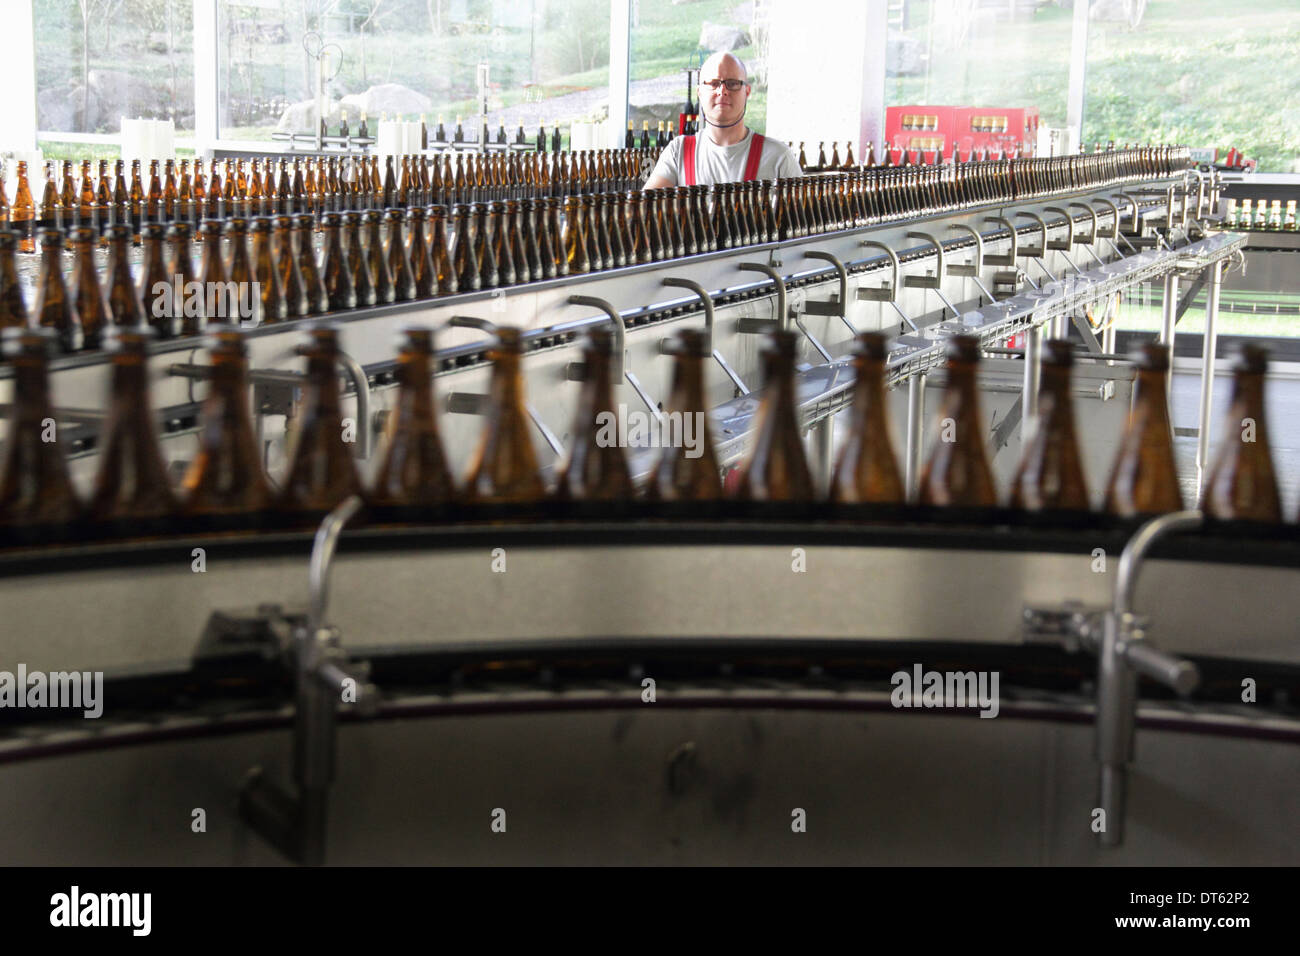 Bierflaschen auf Produktionslinie in Brauerei Stockfoto